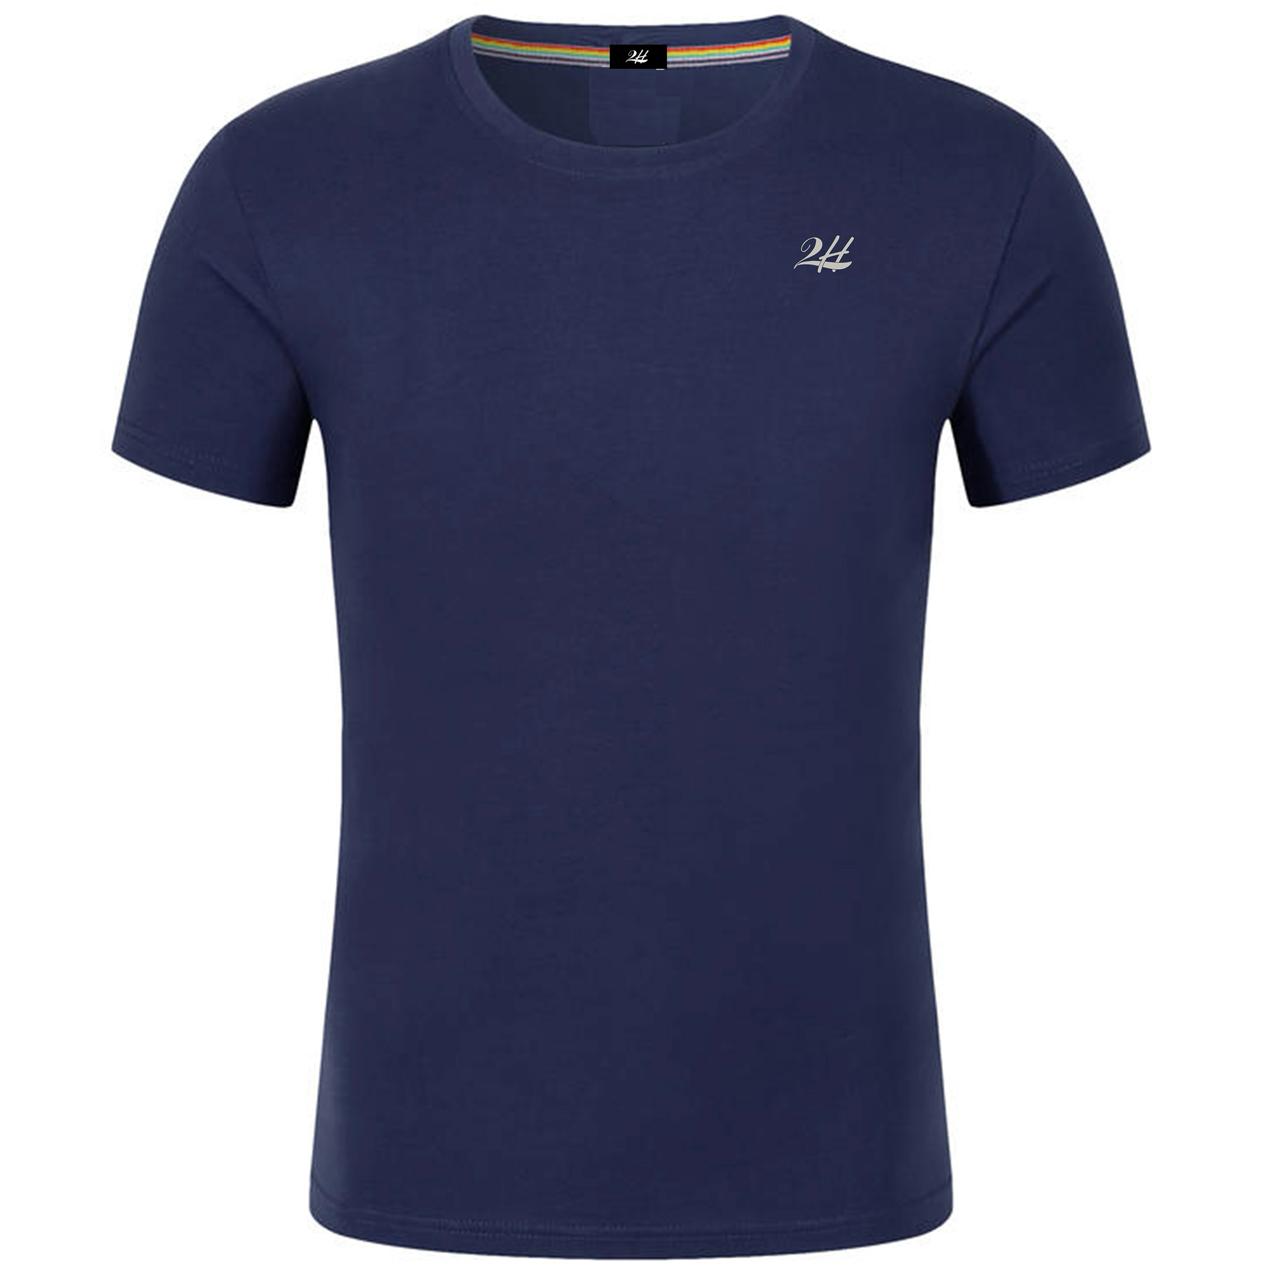 2H #CX81400 Navy Short Sleeve Basic T-shirt